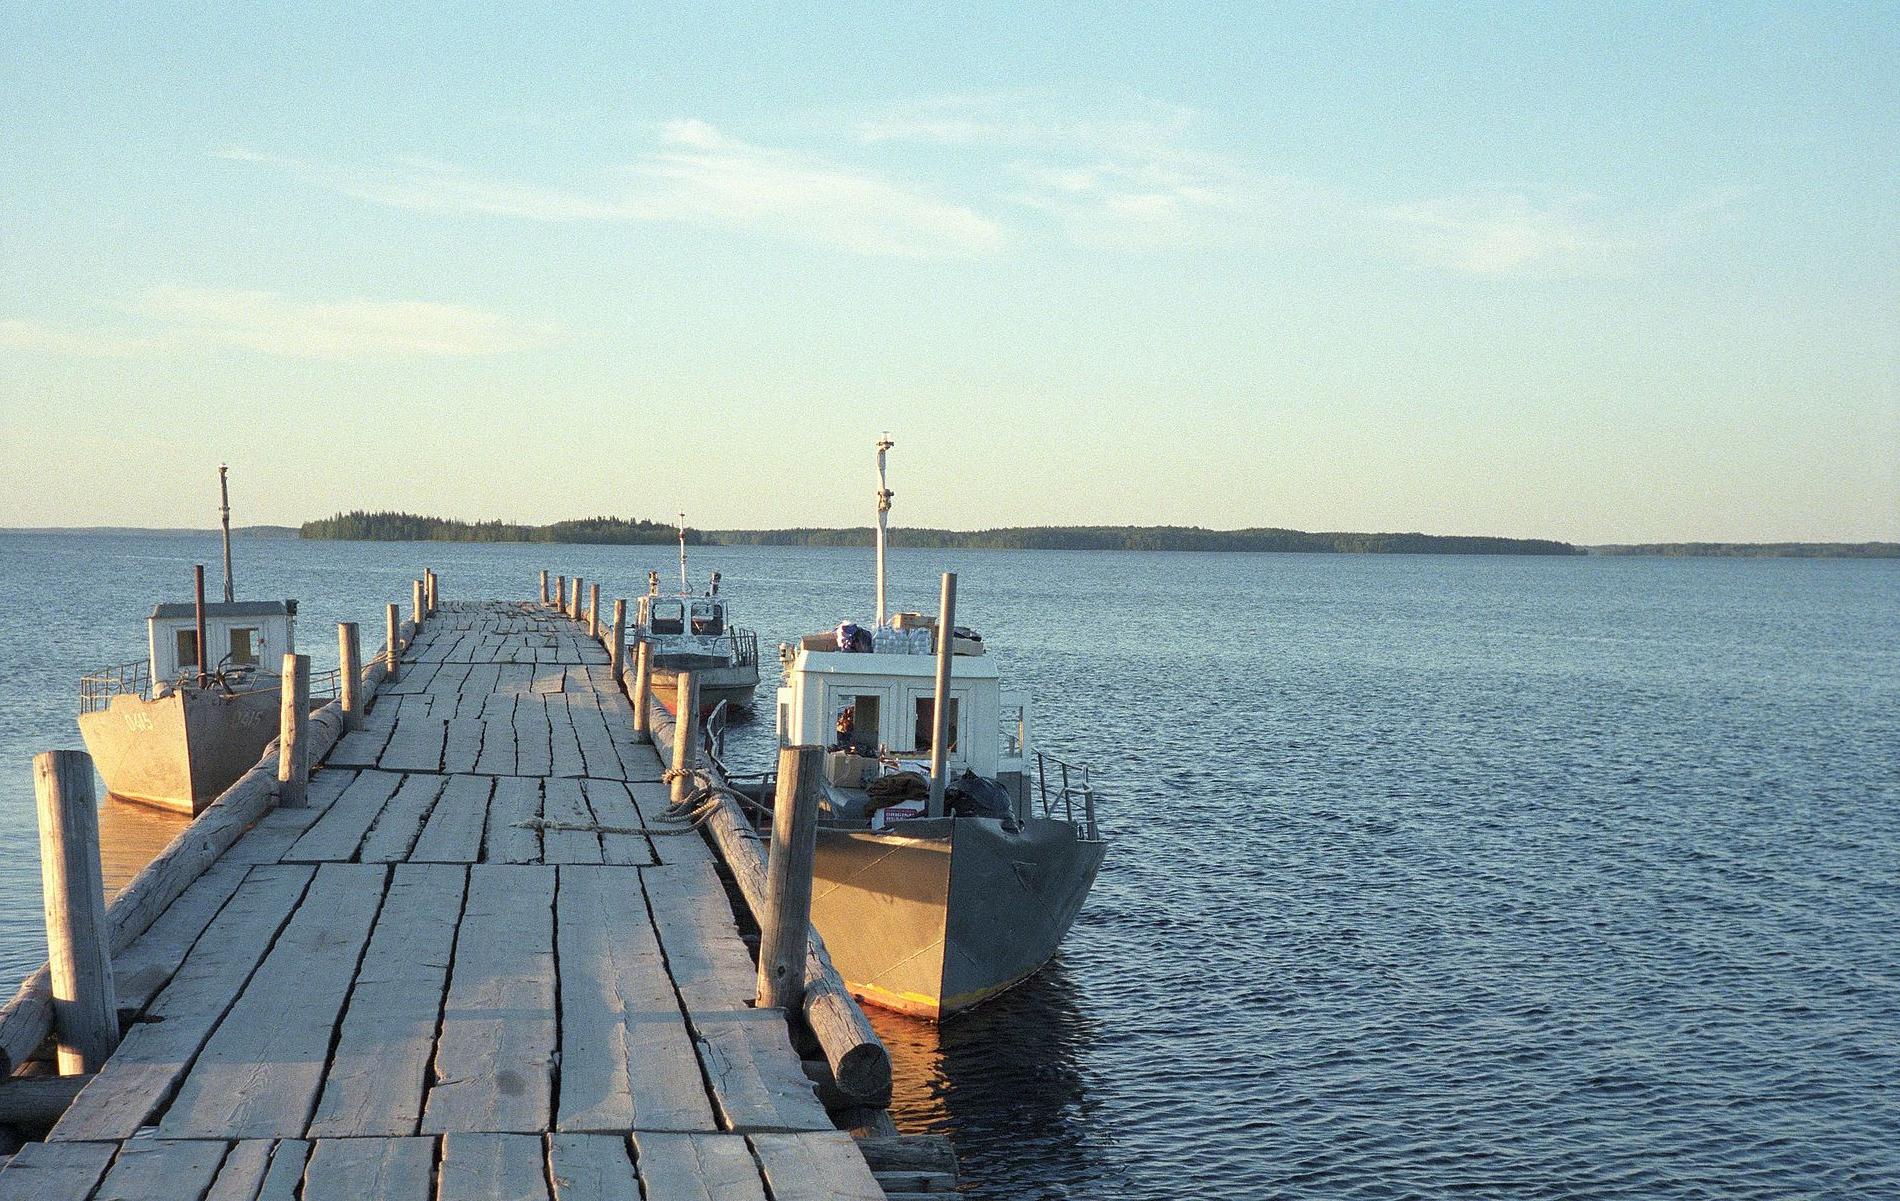 Vodlajärvellä on 196 saarta. Kuganavolokin saaren lähellä sijaitsee Velikostrov (Suursaari), johon avataan nykytaiteen ulkoilmamuseo. Kuva: ru.wikipedia.org/wiki